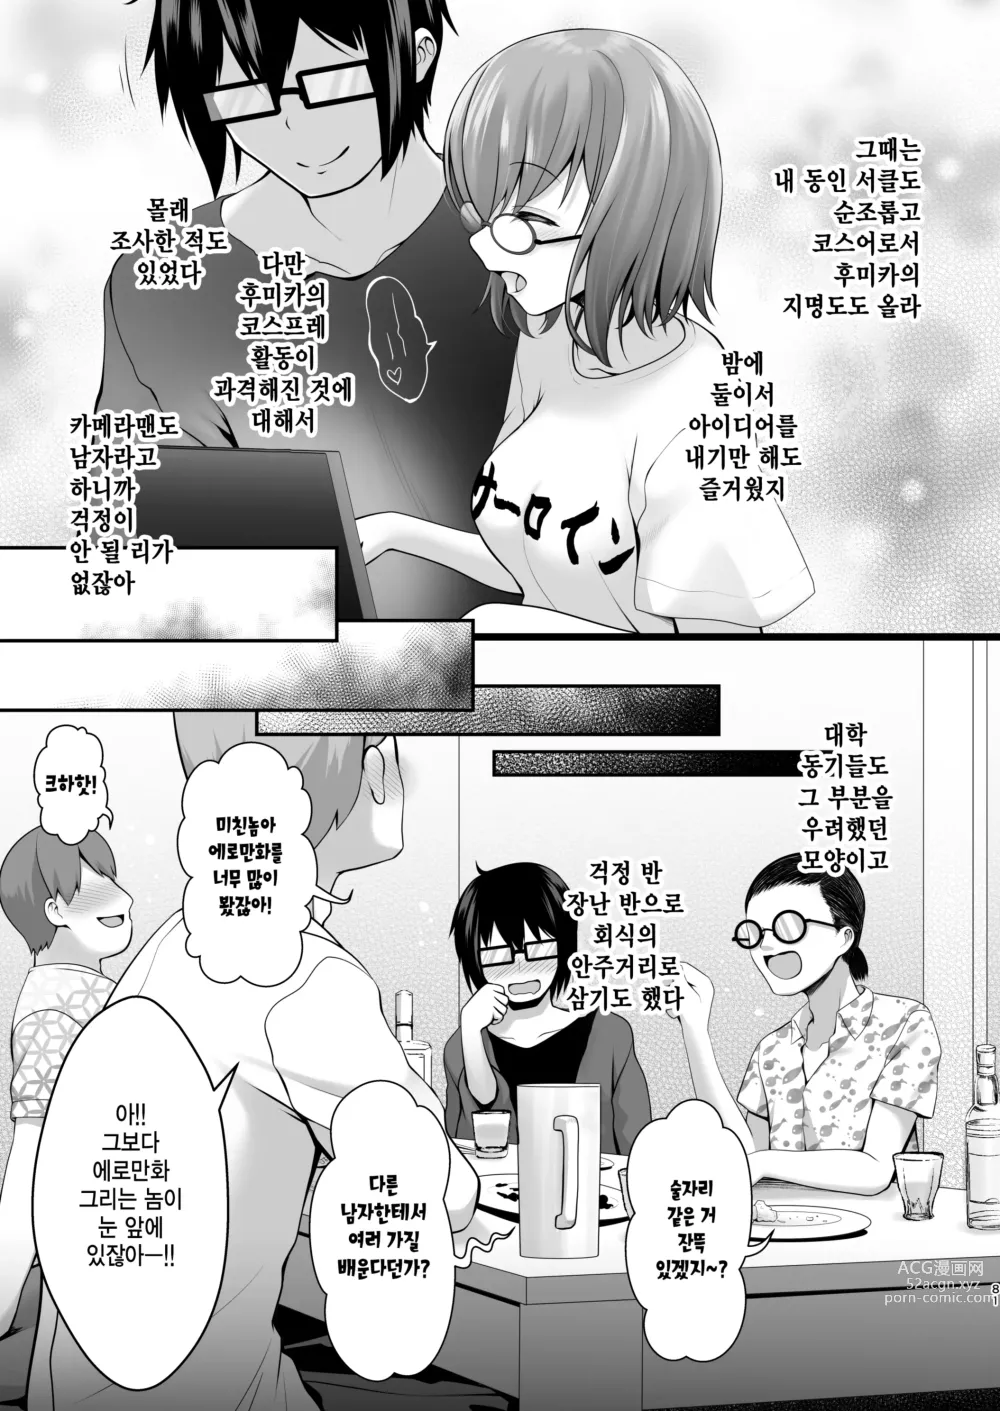 Page 7 of doujinshi 따끈따끈한 신혼 장유 유부녀 코스플레이어 후미카 첫날밤은 남편이 아닌... 양구멍 생삽입 웨딩 개인 촬영